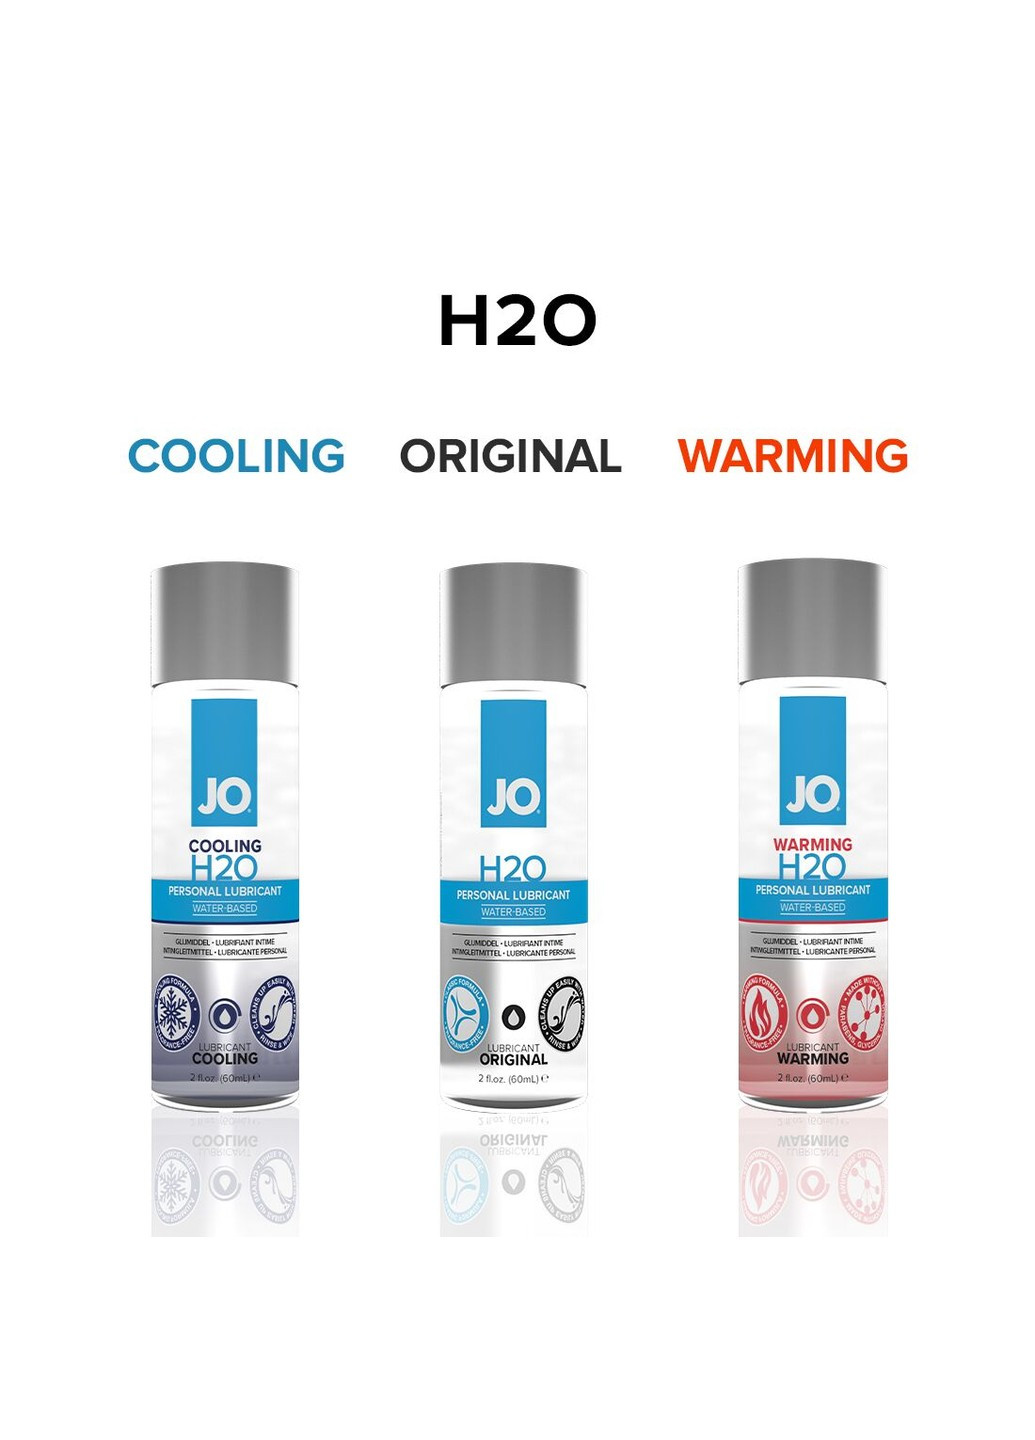 Змазка на водній основі H2O ORIGINAL (30 мл) оліїста і гладенька, рослинний гліцерин System JO (257203180)